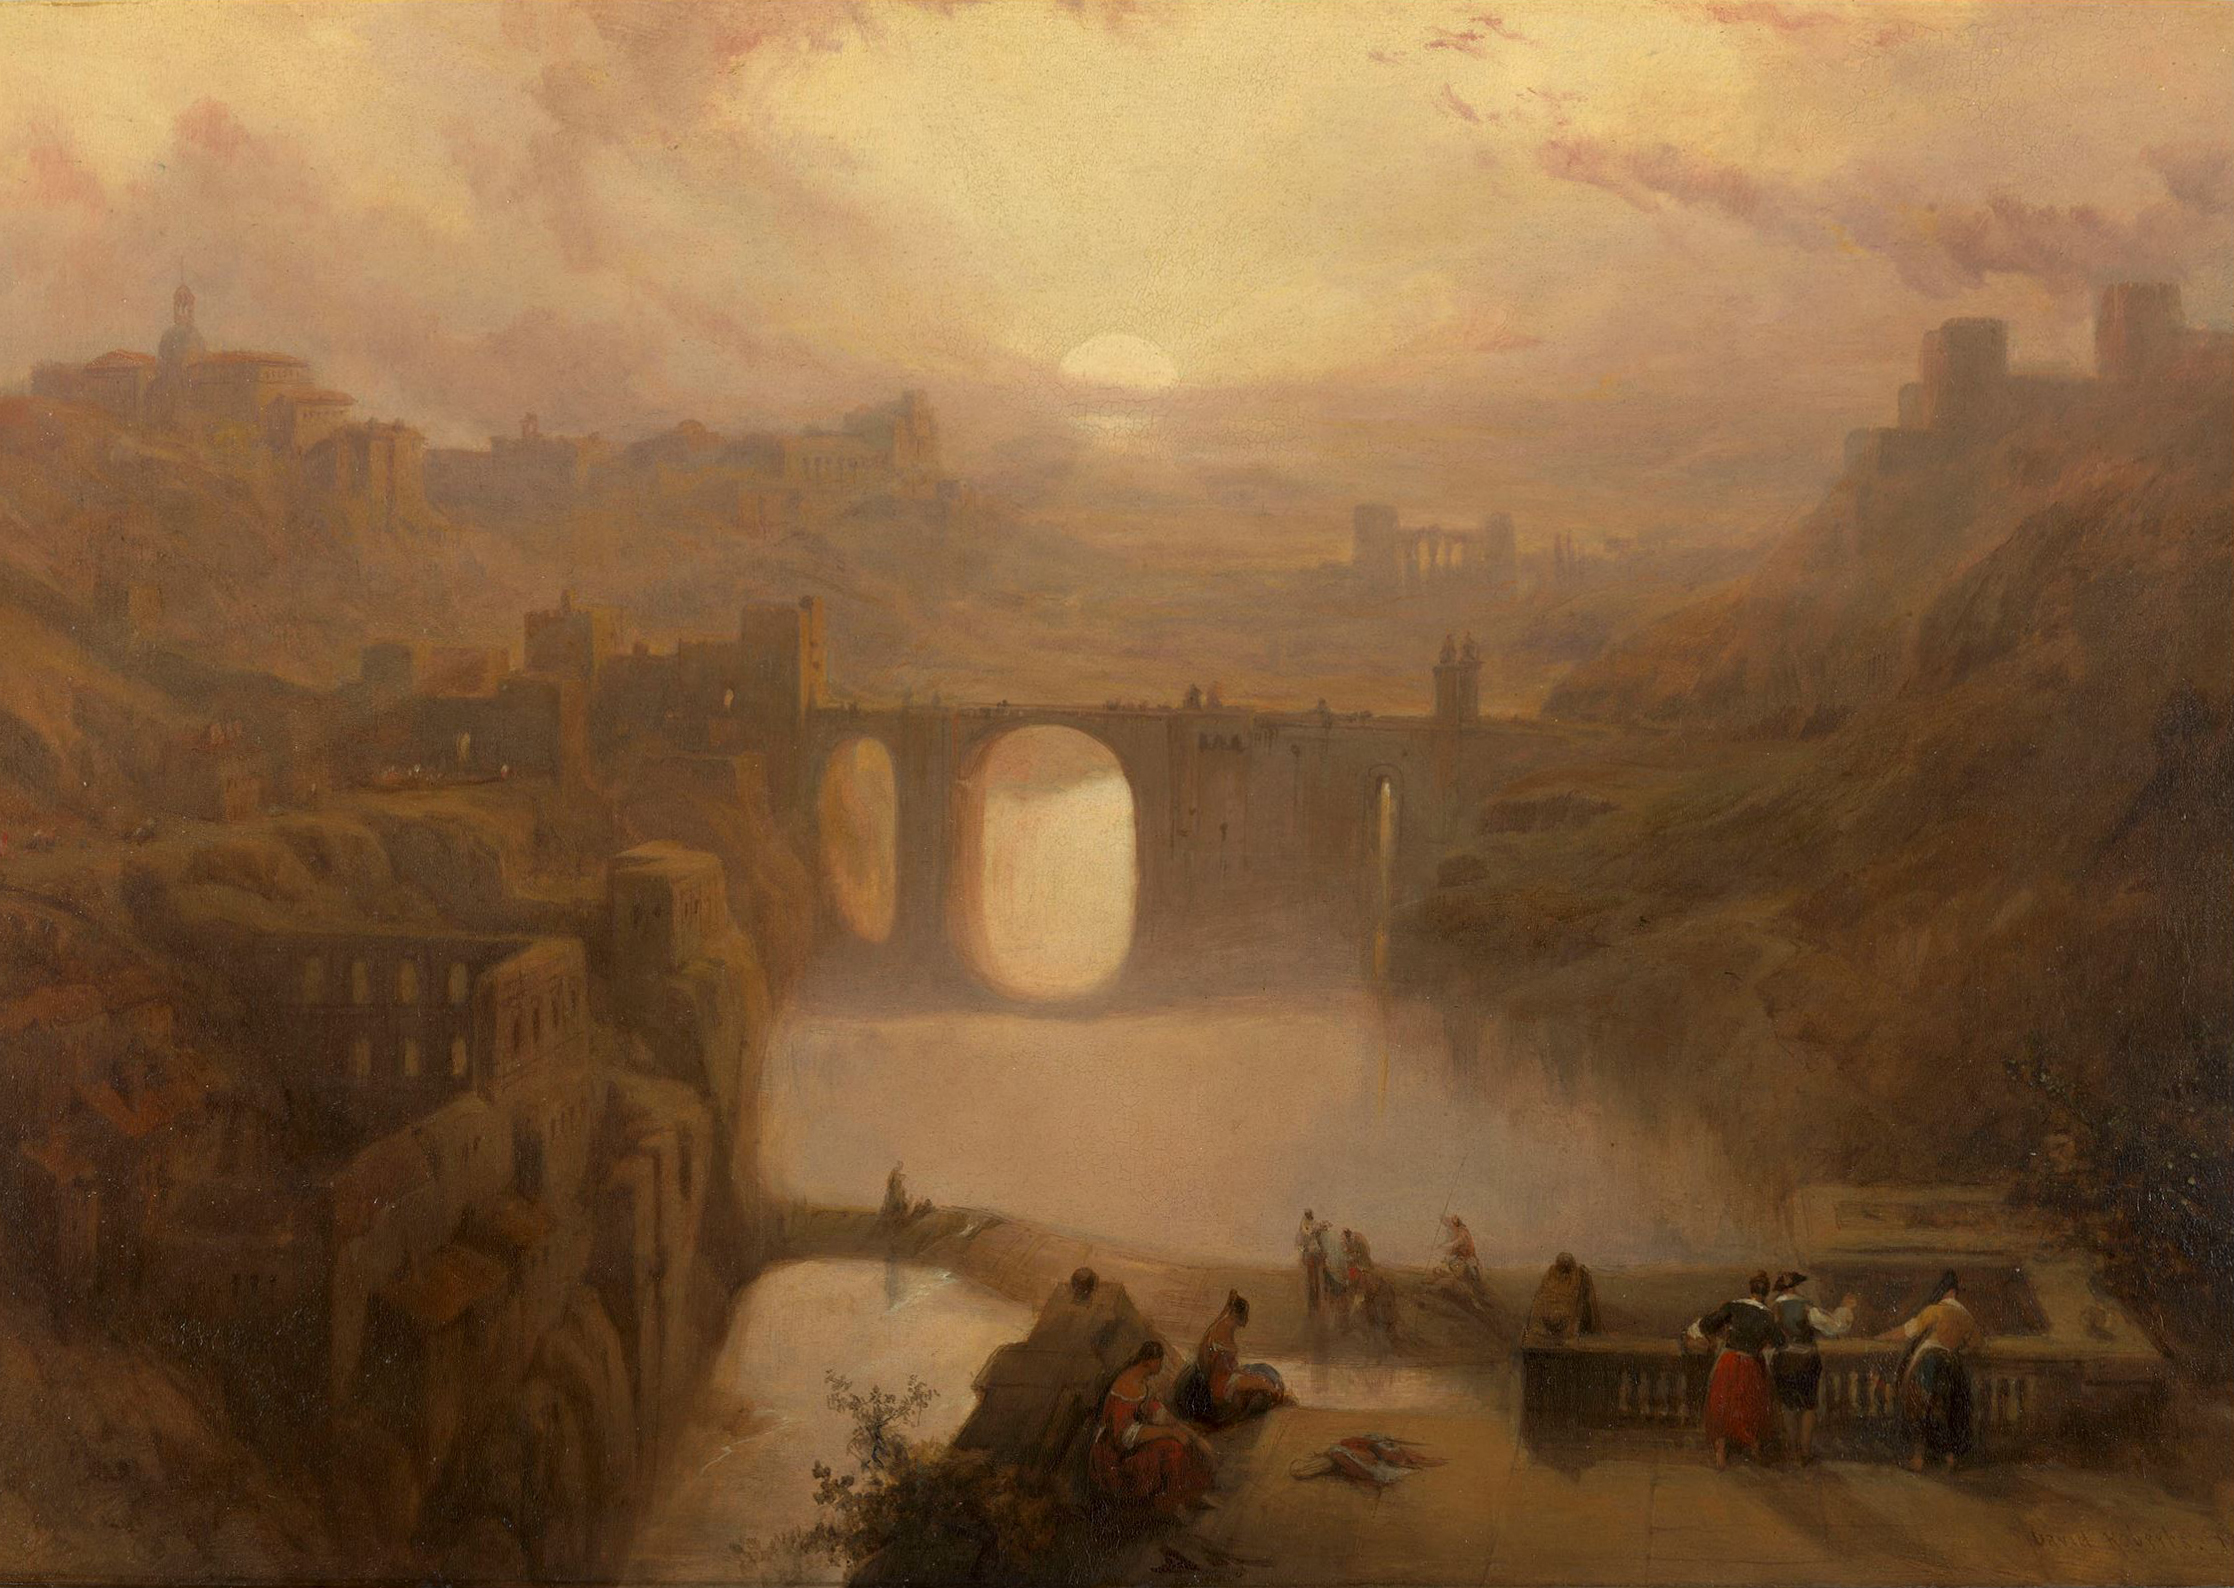 Una vista de Toledo y el río Tajo (1841) David Roberts. Óleo sobre panel 25 x 36,45 cm. The Royal Collection